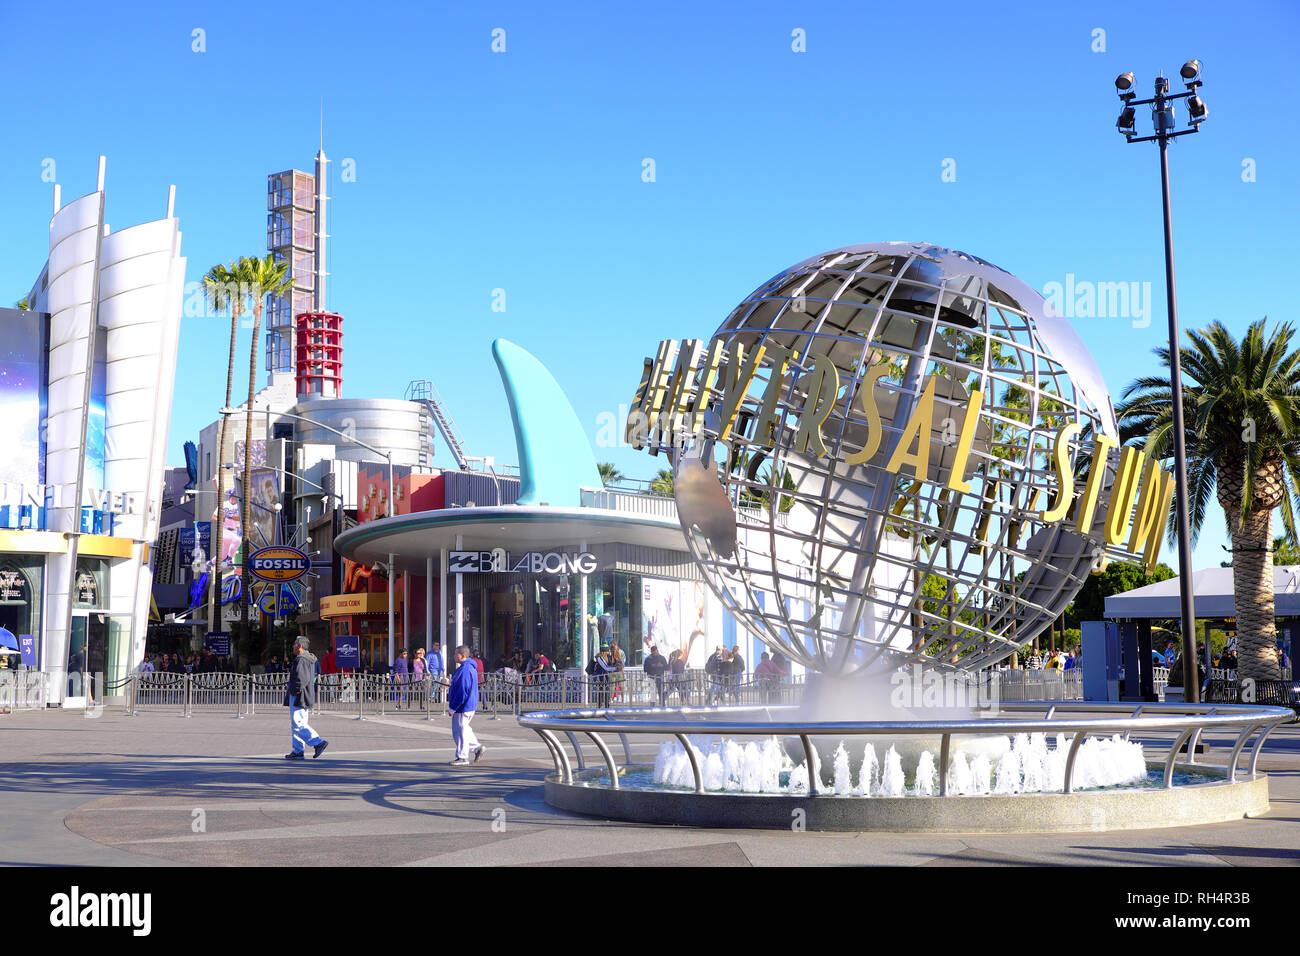 USA, Californie, Los Angeles : Universal Studios Hollywood, parc à thème et studio de cinéma Banque D'Images